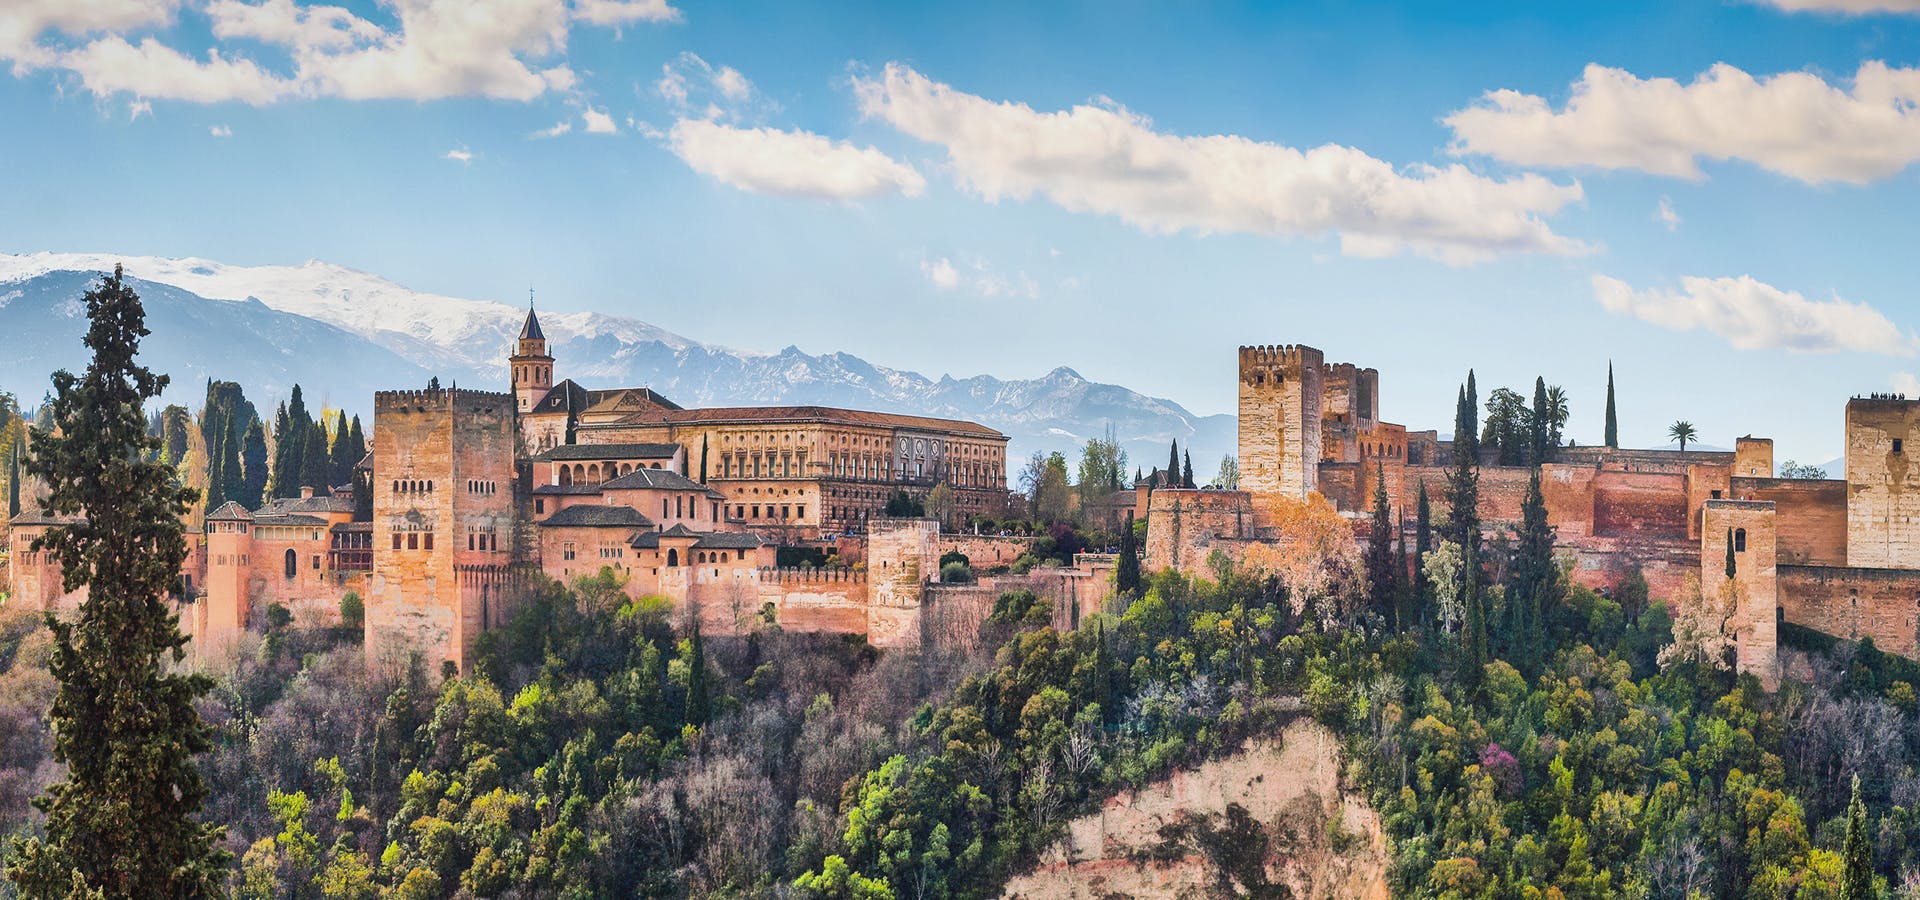 Rundtur med biljetter till hela Alhambra (palats, Alcazaba, Generalifes trädgårdar)